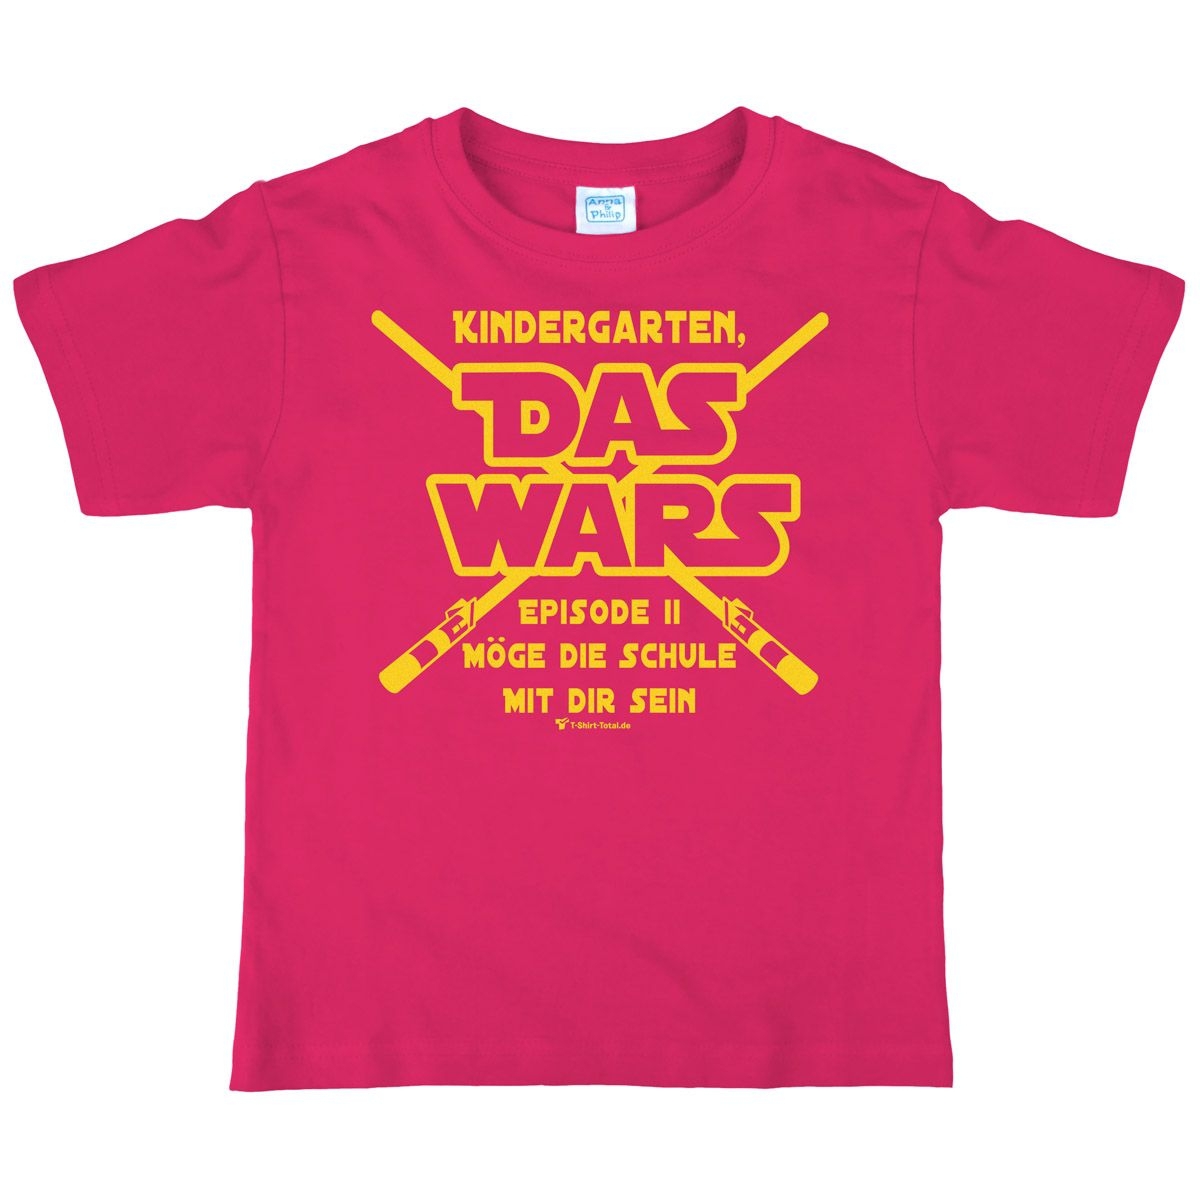 Das wars Kindergarten Kinder T-Shirt mit Namen pink 134 / 140